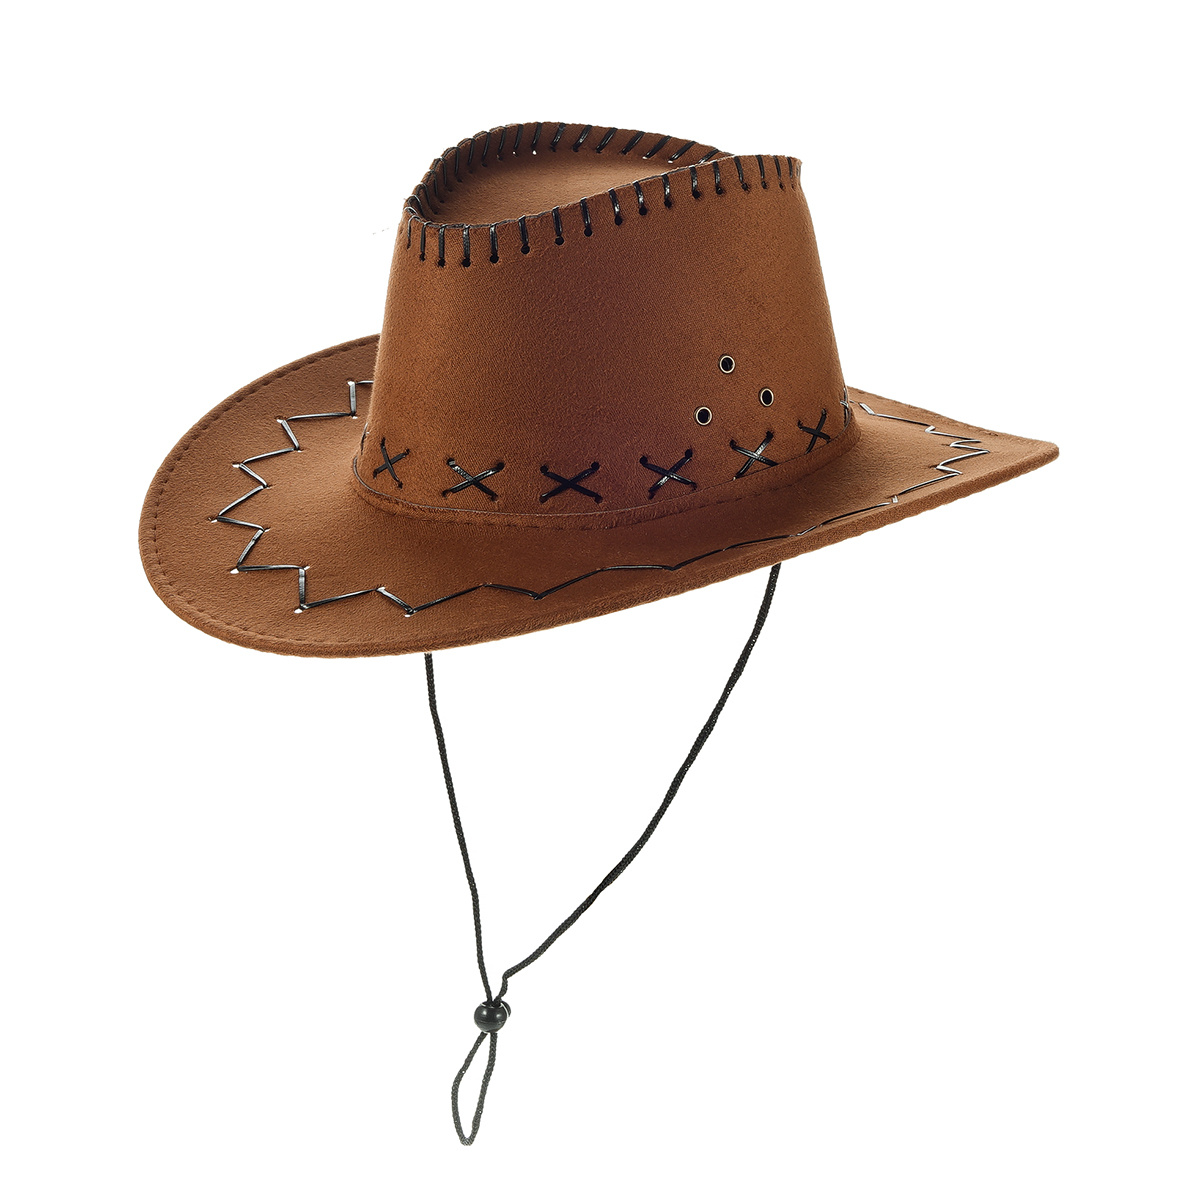 Sombrero Cowboy Mujer de segunda mano por 28 EUR en Villanueva de